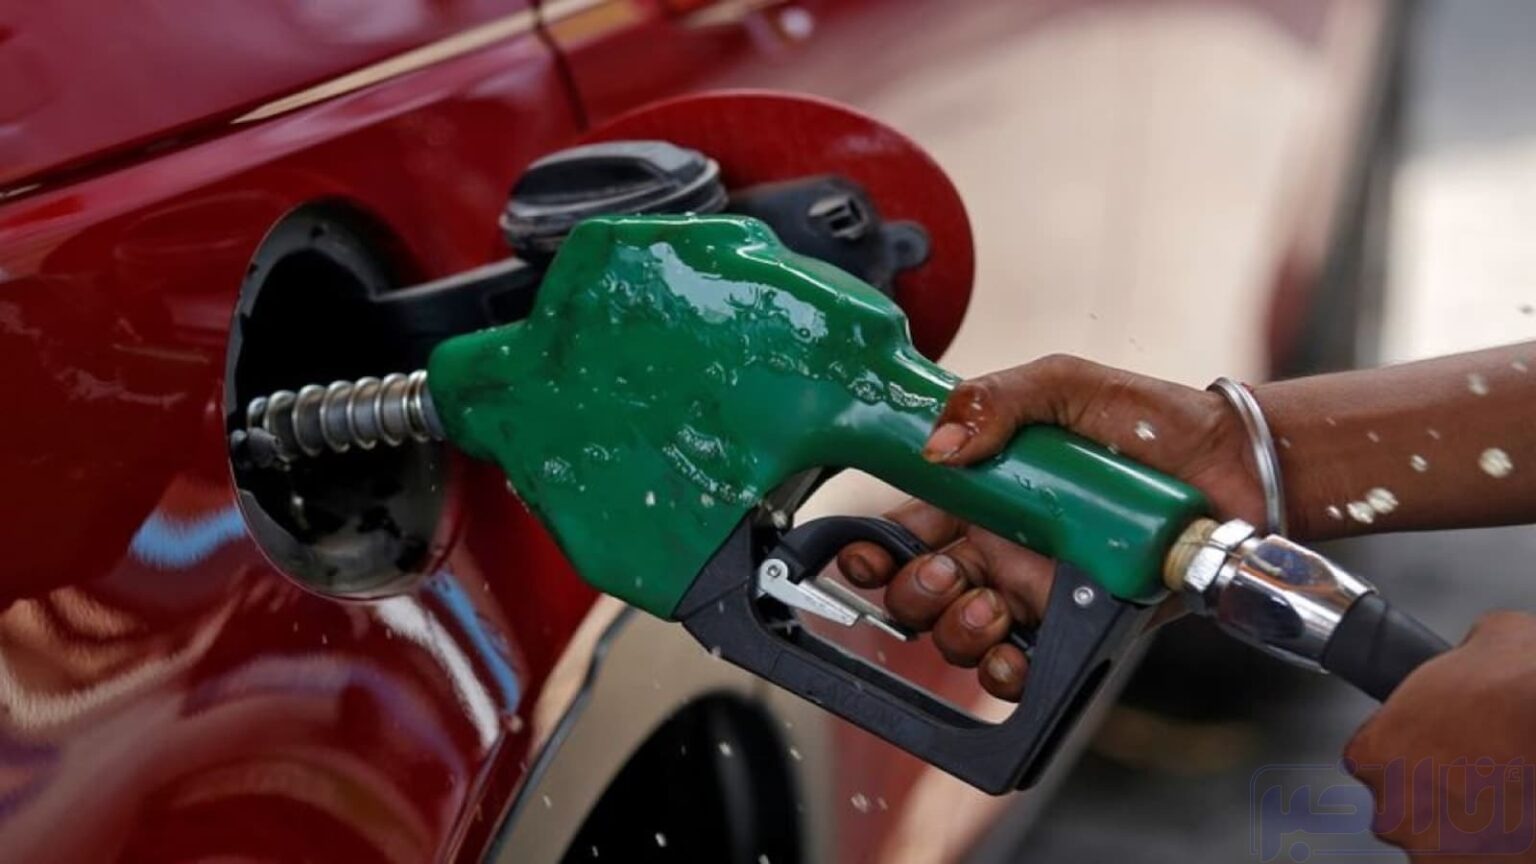 بسبب ارتفاع أسعار المحروقات.. نصائح مهمة لتقليل استهلاك الوقود